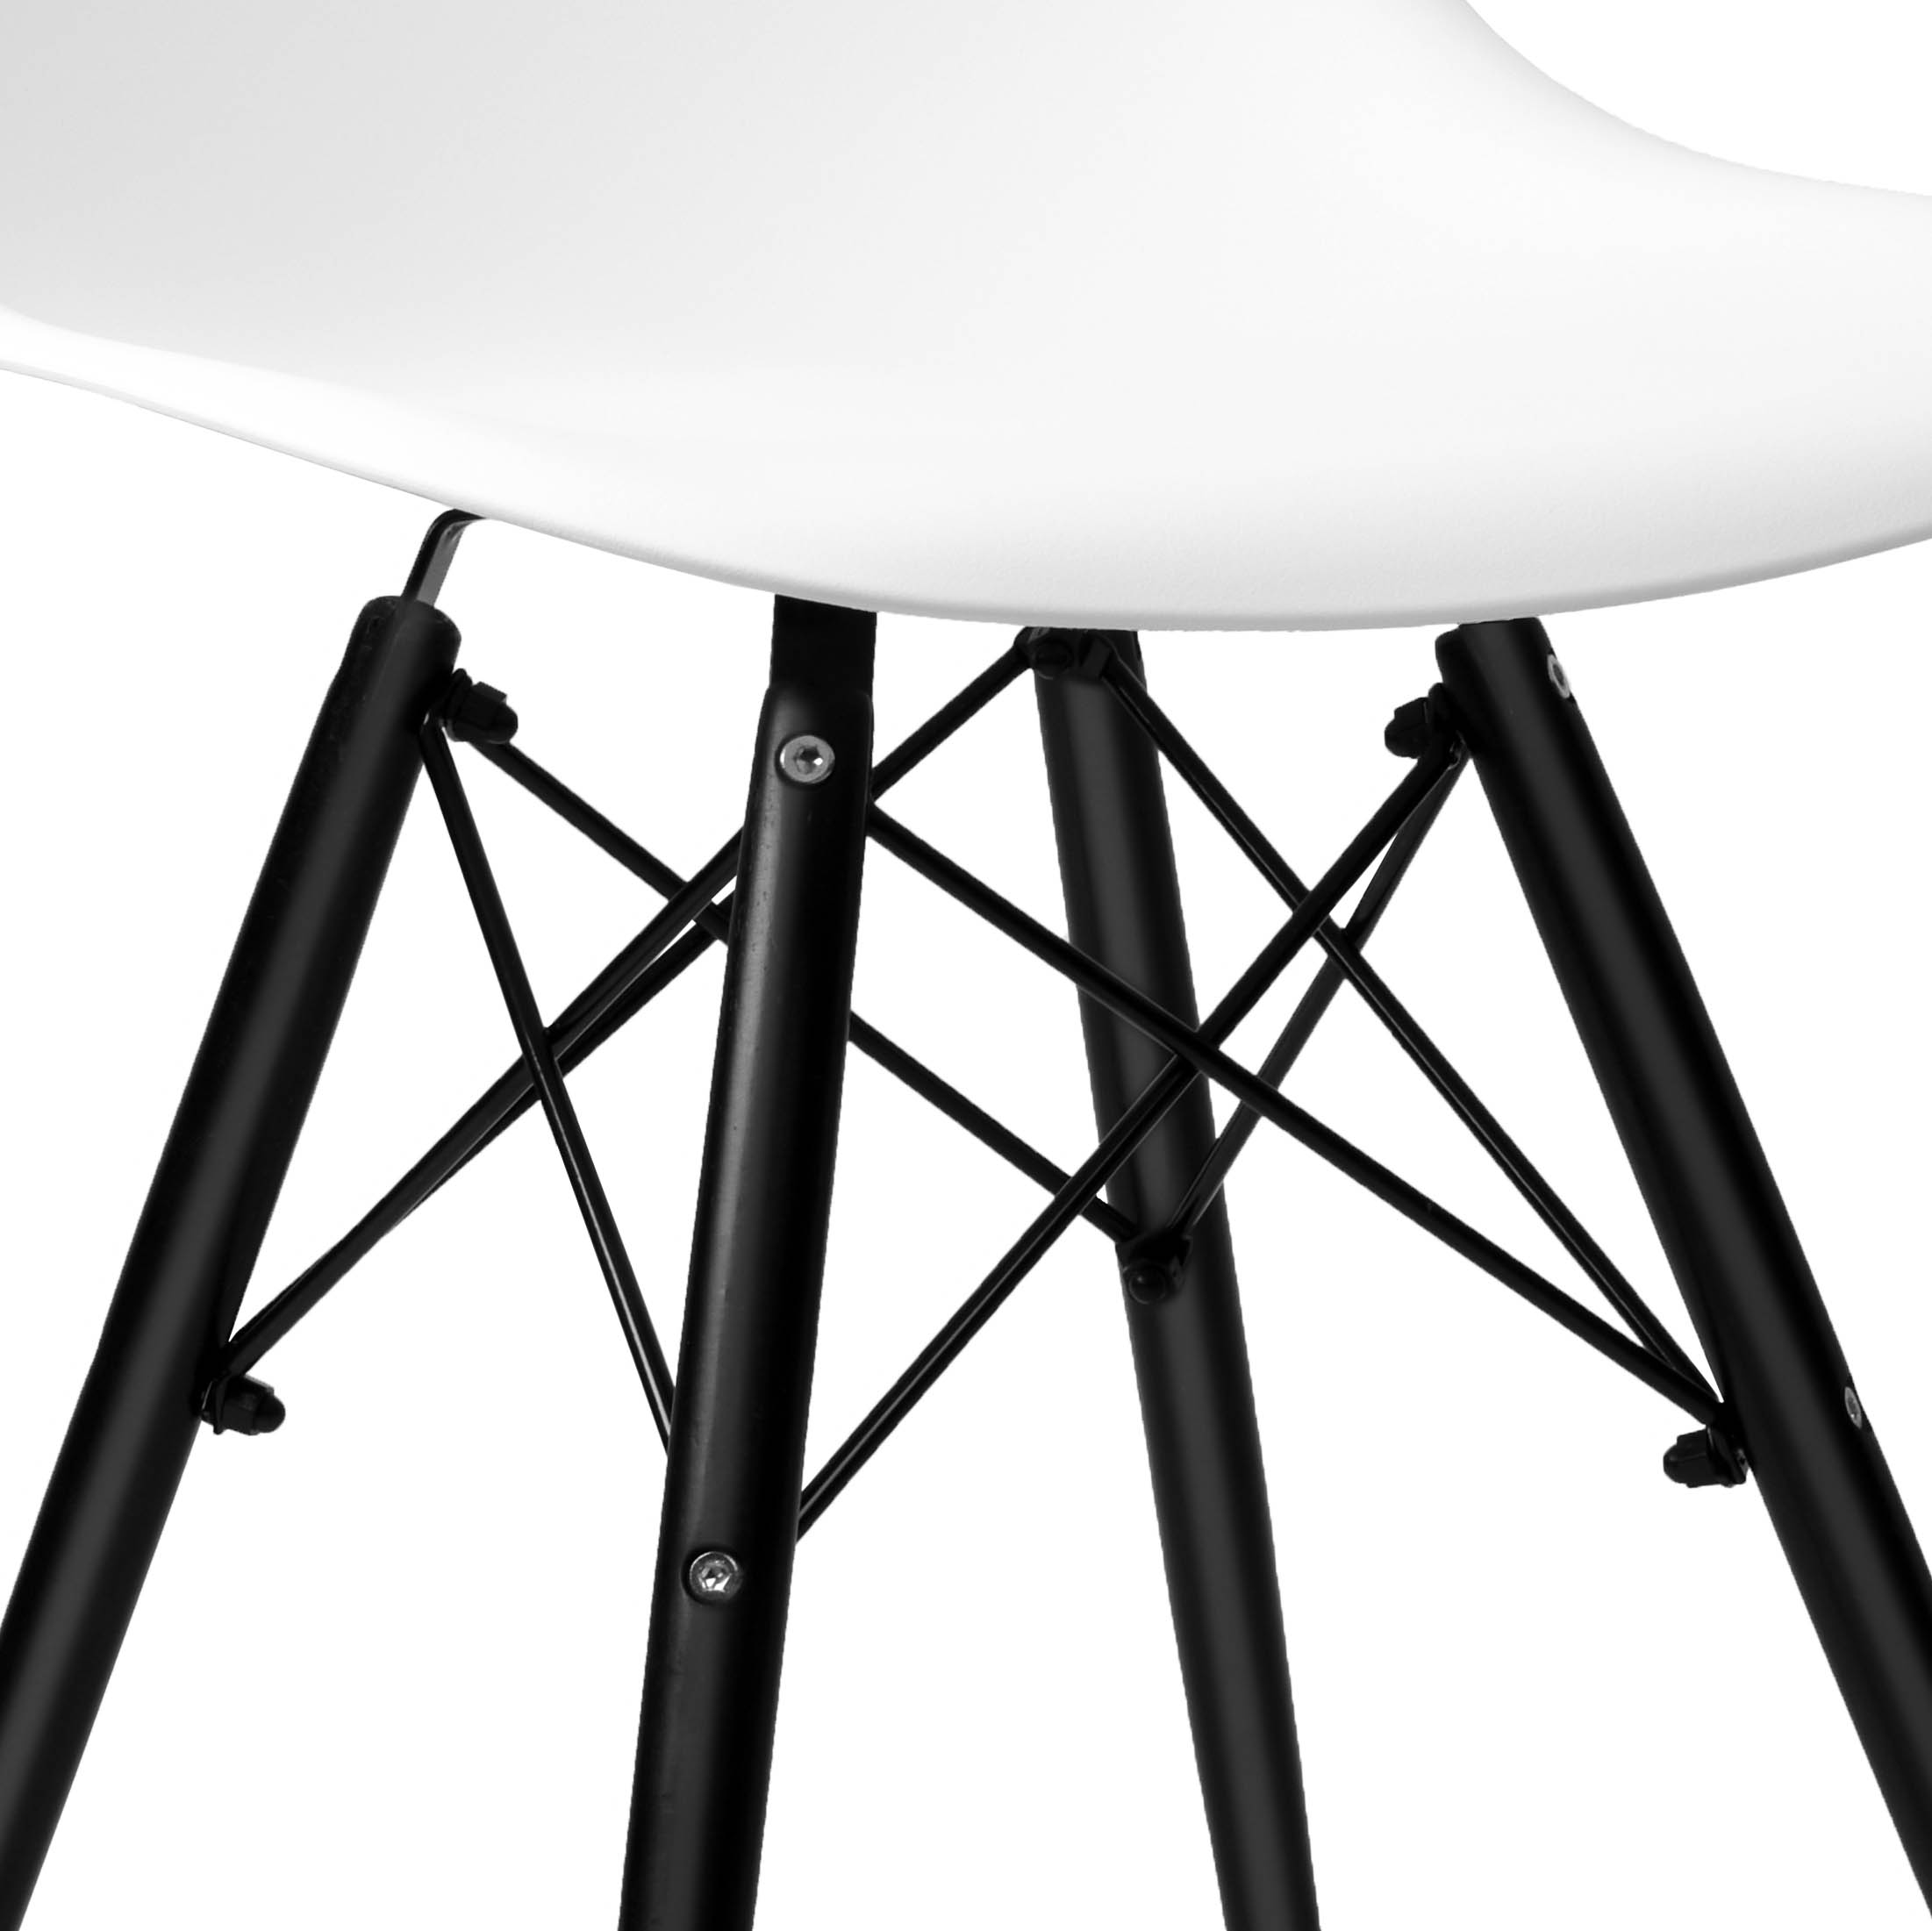 Krzesło skandynawskie Milano Black DSW białe